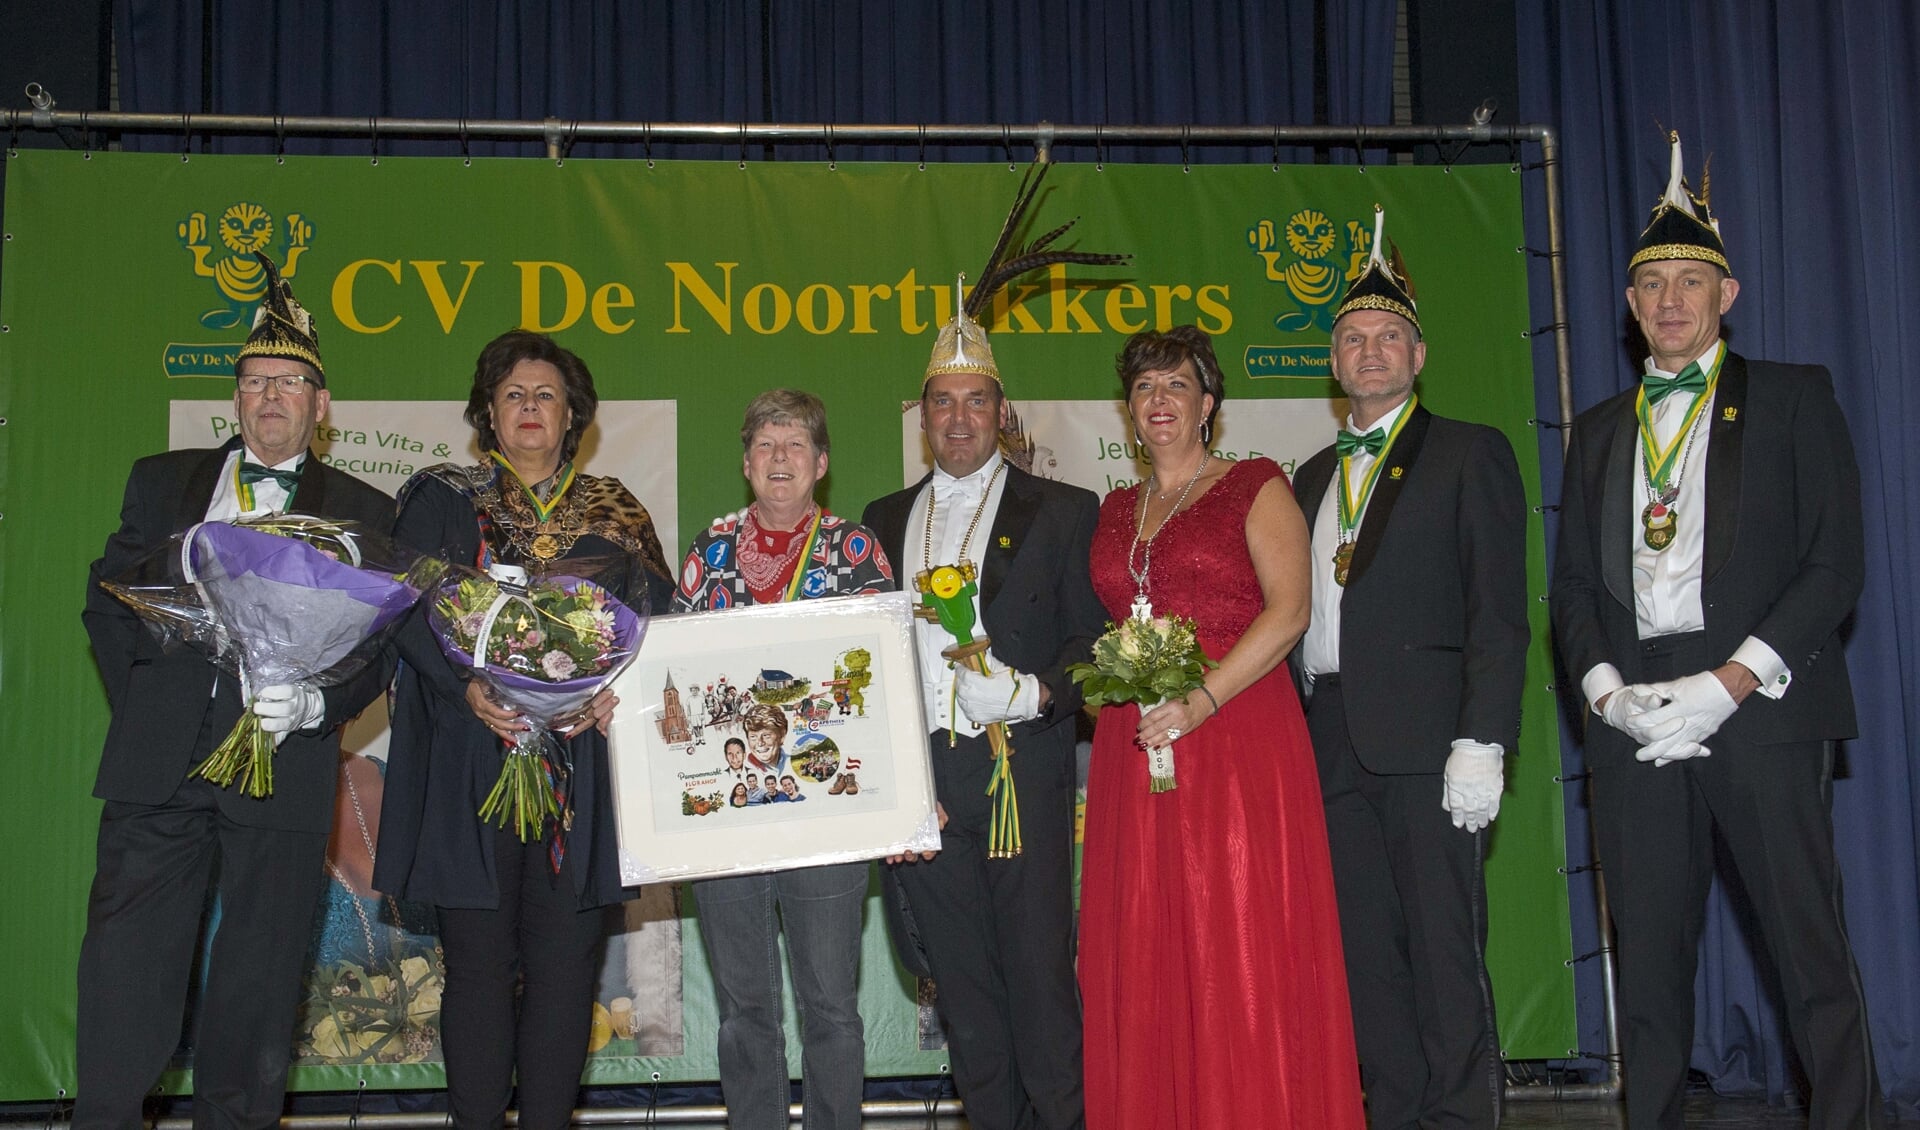 Mevr. Magda Salman-van der Geest is uitgeroepen tot Groot Noortukker 2020. | Foto: Krol Foto